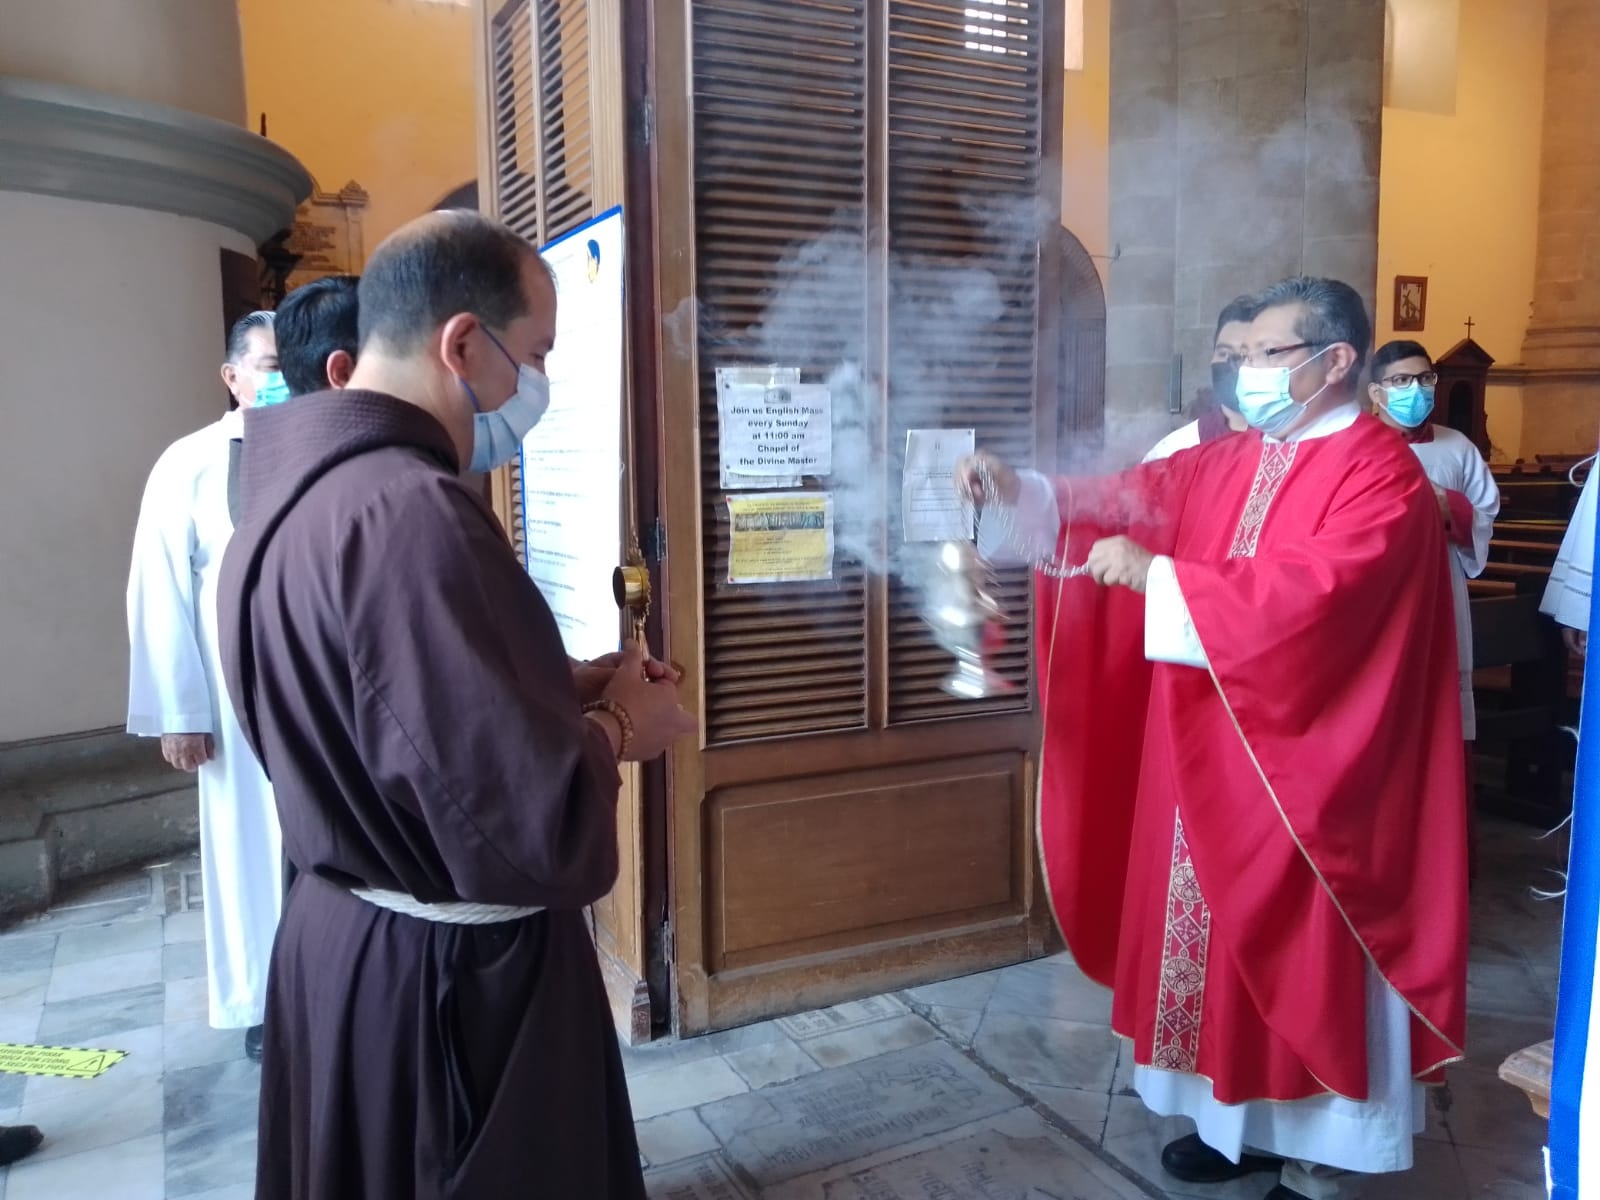 Varios fieles católicos dieron cita en este evento único para la iglesia en Mérida